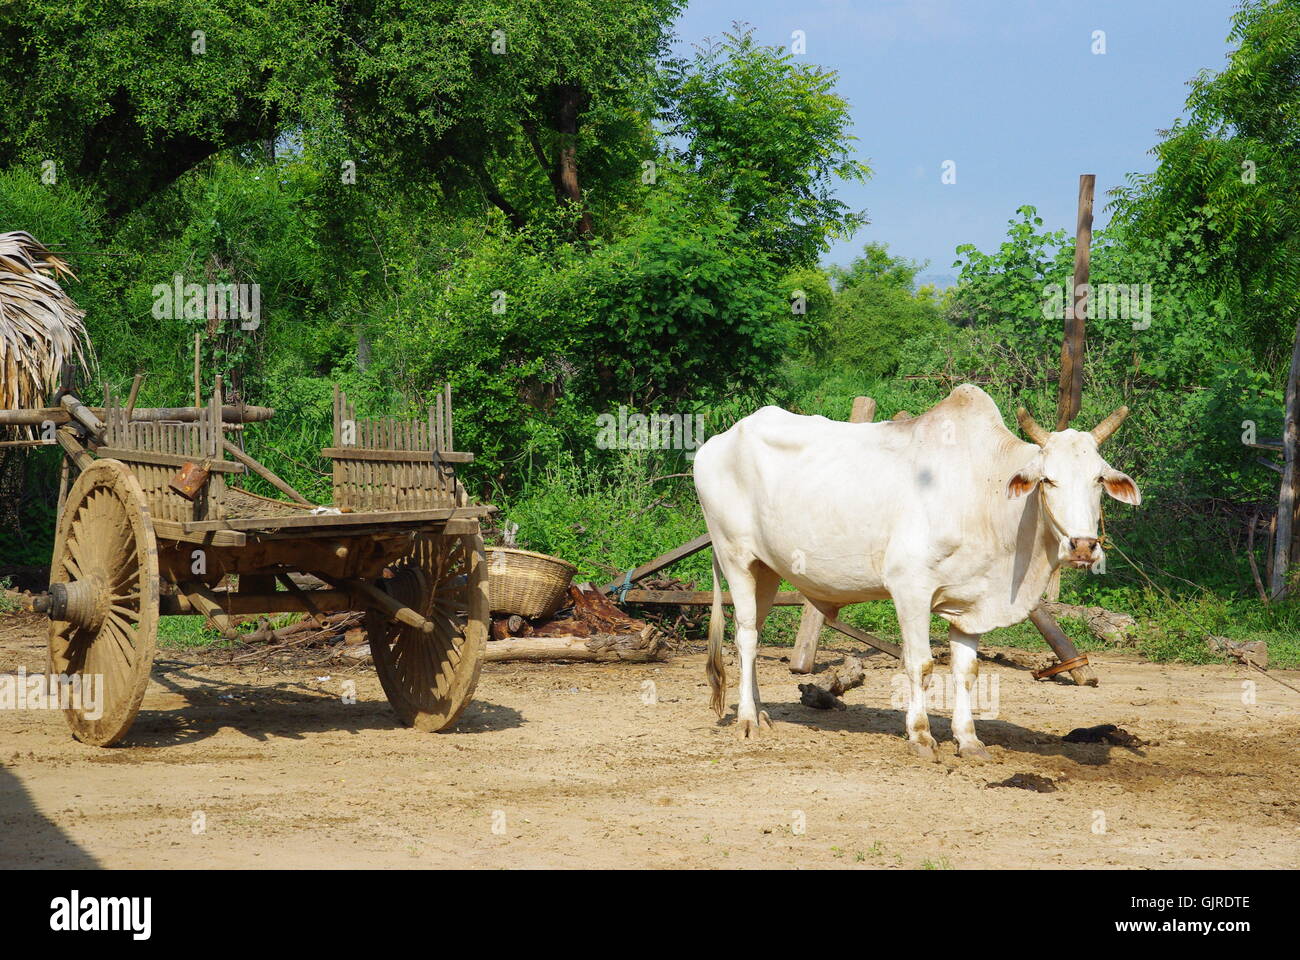 El búfalo y el carro, myanmar Foto de stock